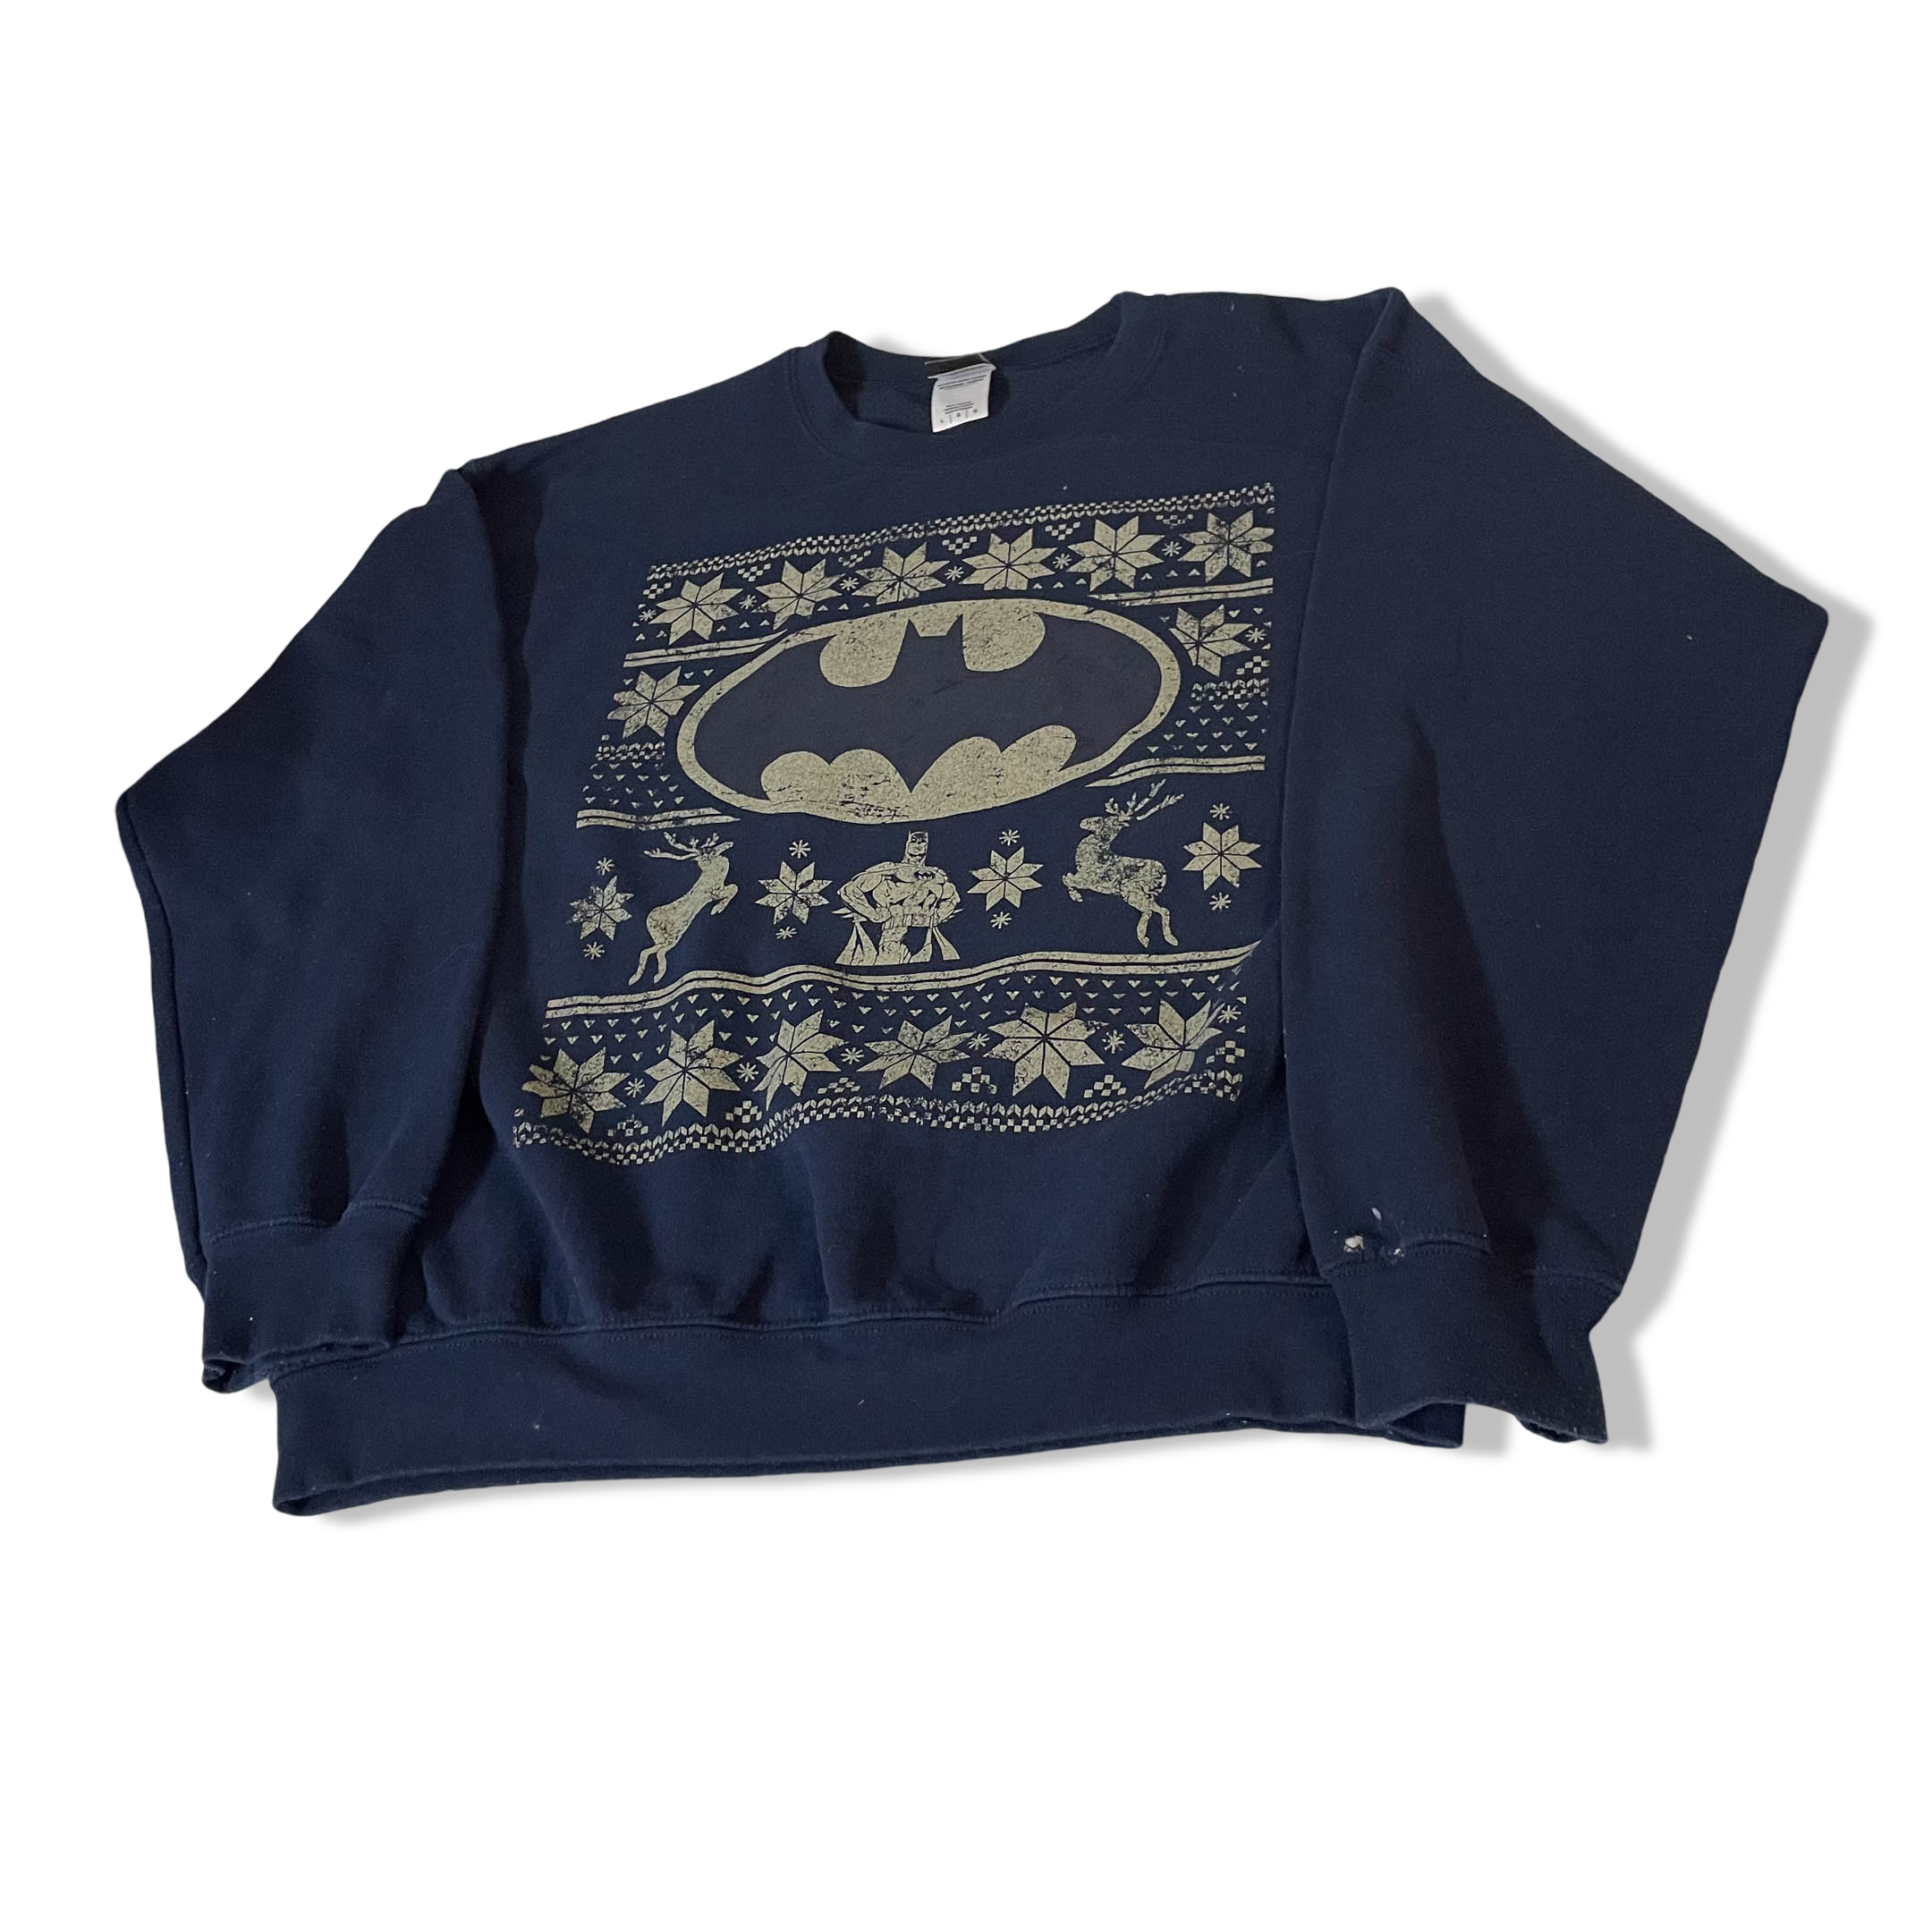 Vintage Justice League Batman Christmas Unisex Navy Large Sweatshirt|L26W24|3789